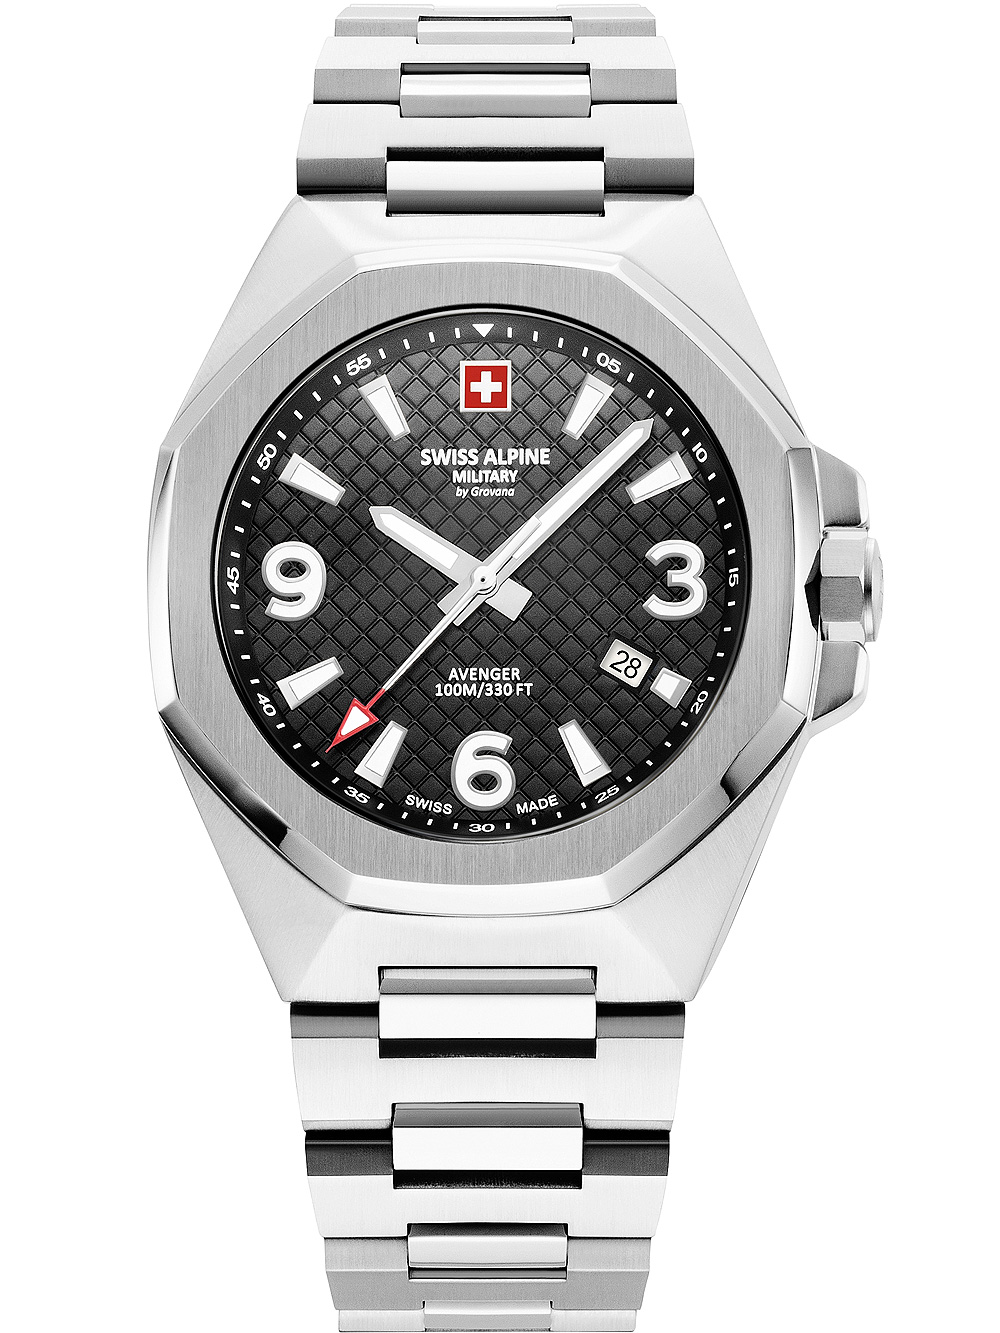 Pánské hodinky Swiss Alpine Military 7005.1137 Avenger